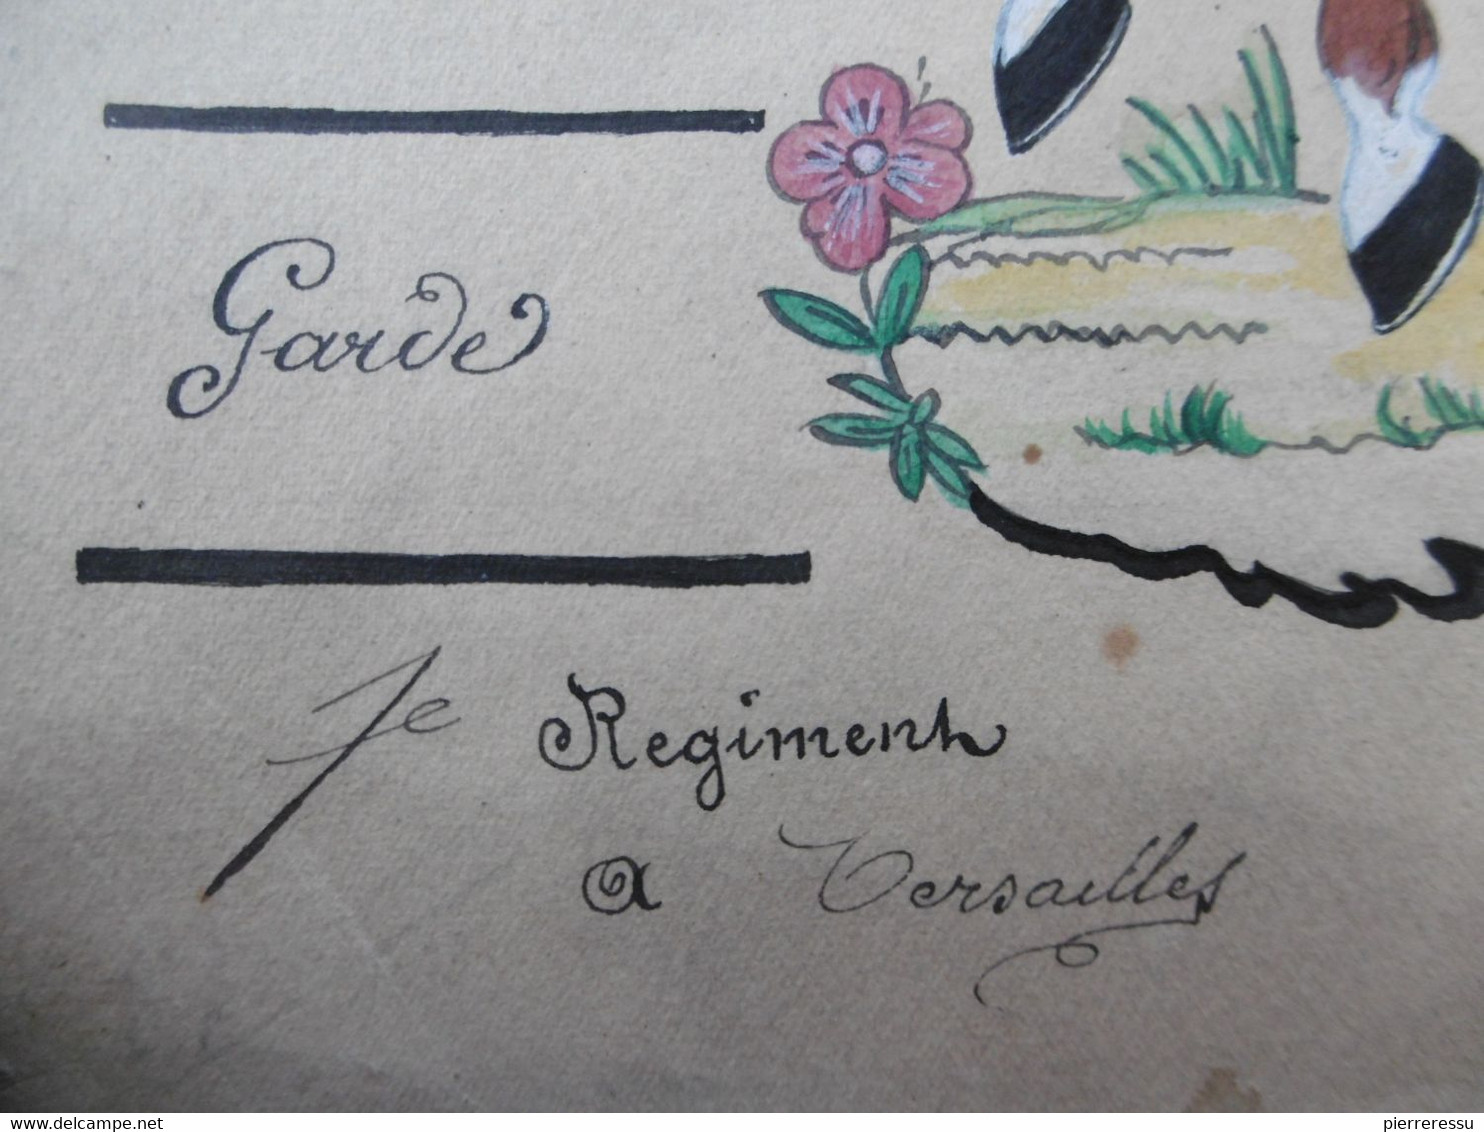 GARDE IMPERIALE GARDE D HONNEUR 1er REGIMENT DESSIN A LA GOUACHE 1813 BONAPARTE & JOSEPHINE - Dokumente